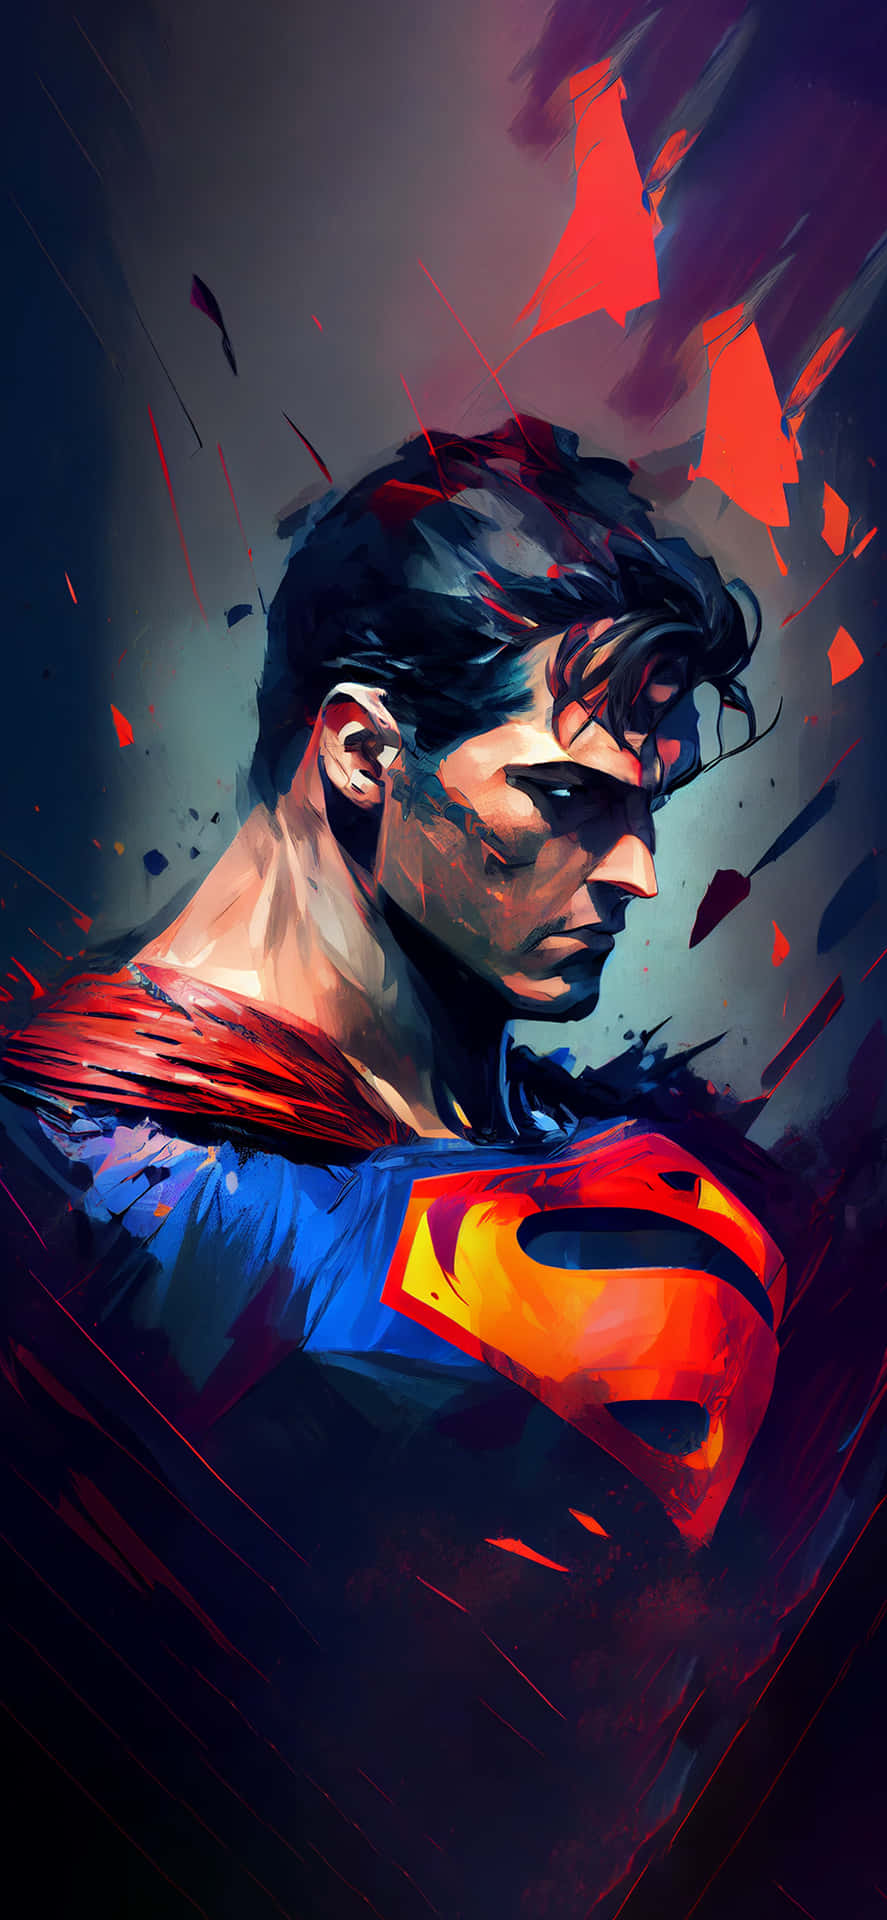 Supermanhintergrund